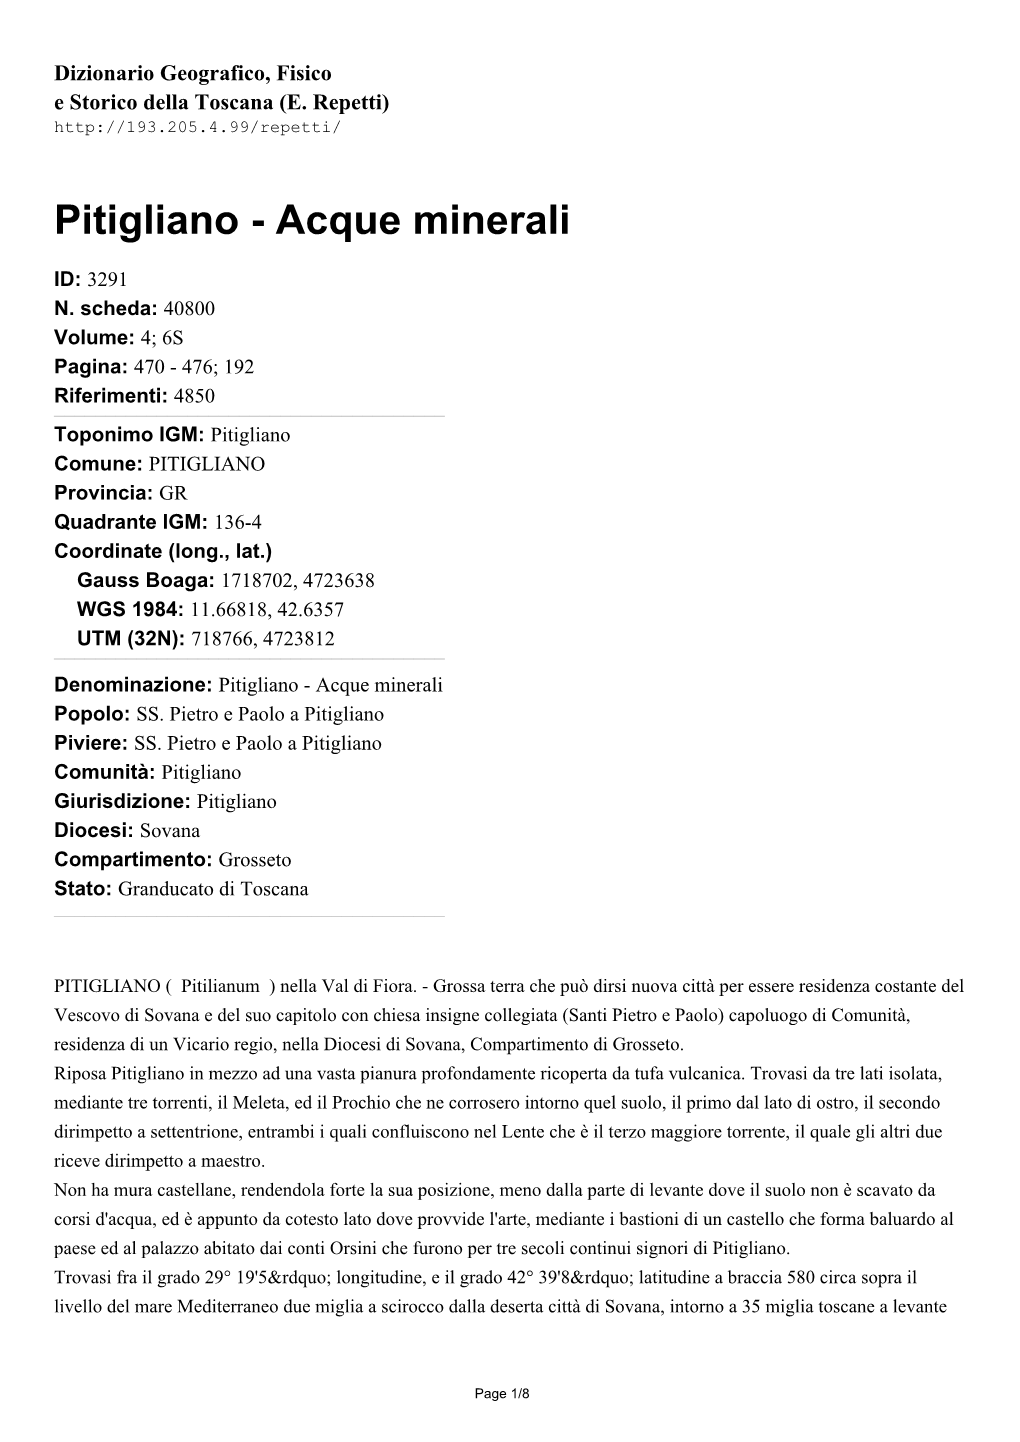 Pitigliano - Acque Minerali